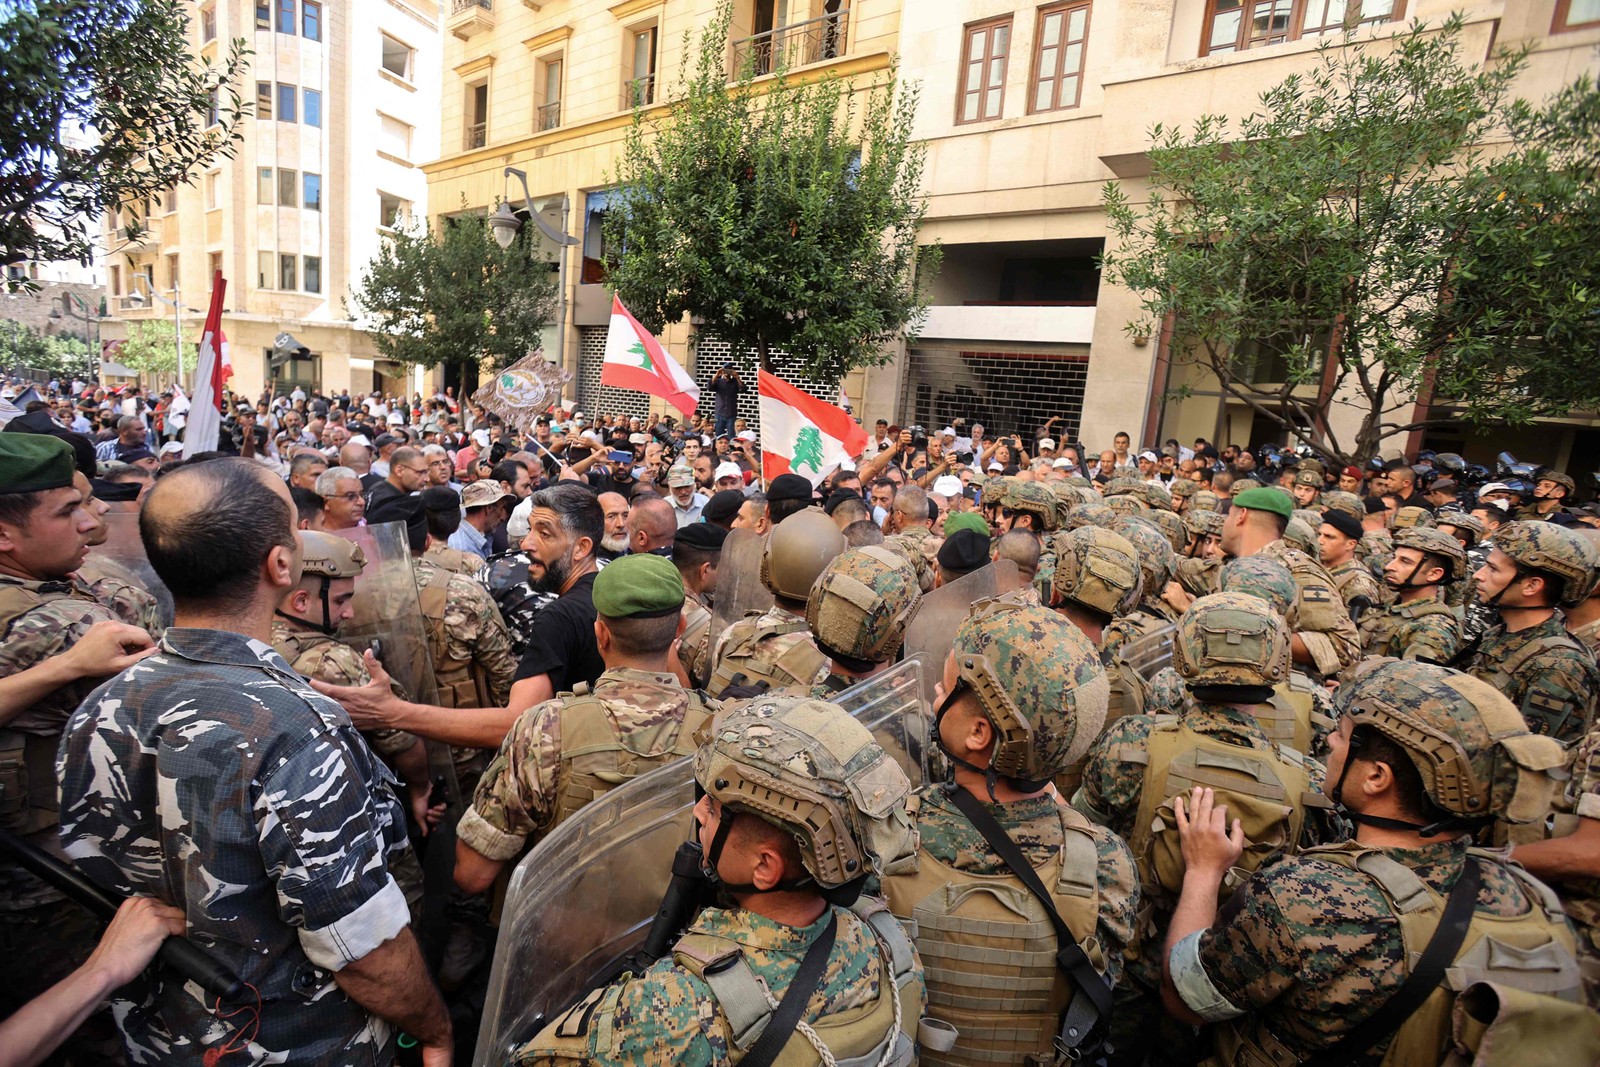 Soldados do exército libanês entram em confronto com militares aposentados enquanto tentam invadir o parlamento em Beirute — Foto: ANWAR AMRO / AFP